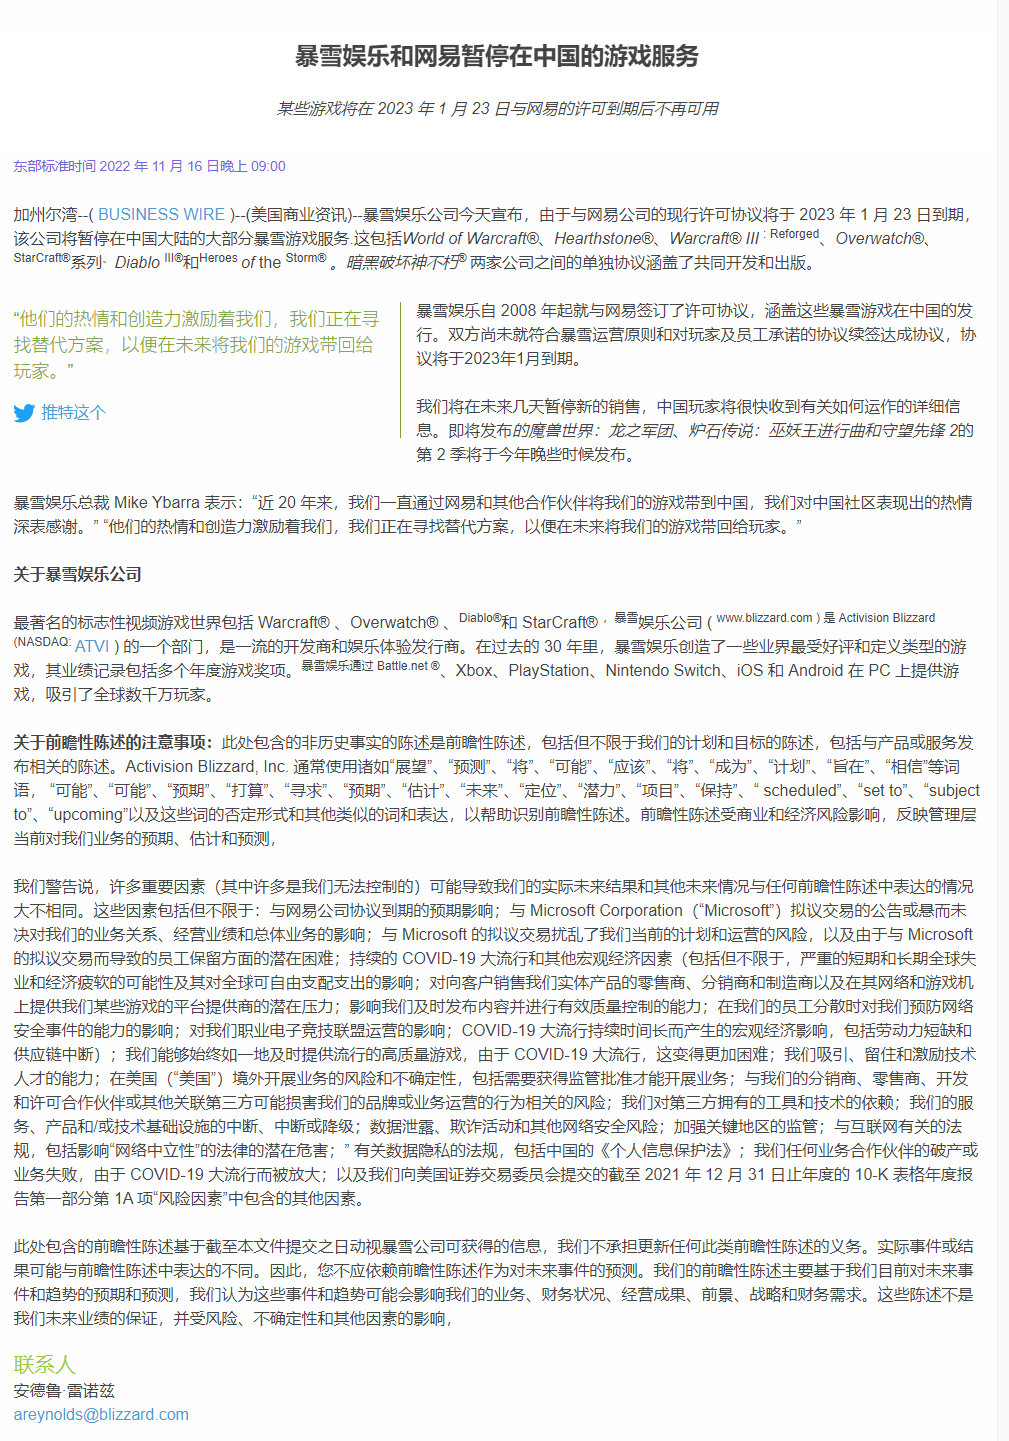 暴雪网易终止合作怎么回事 暴雪将在中国大陆暂停多数游戏服务介绍